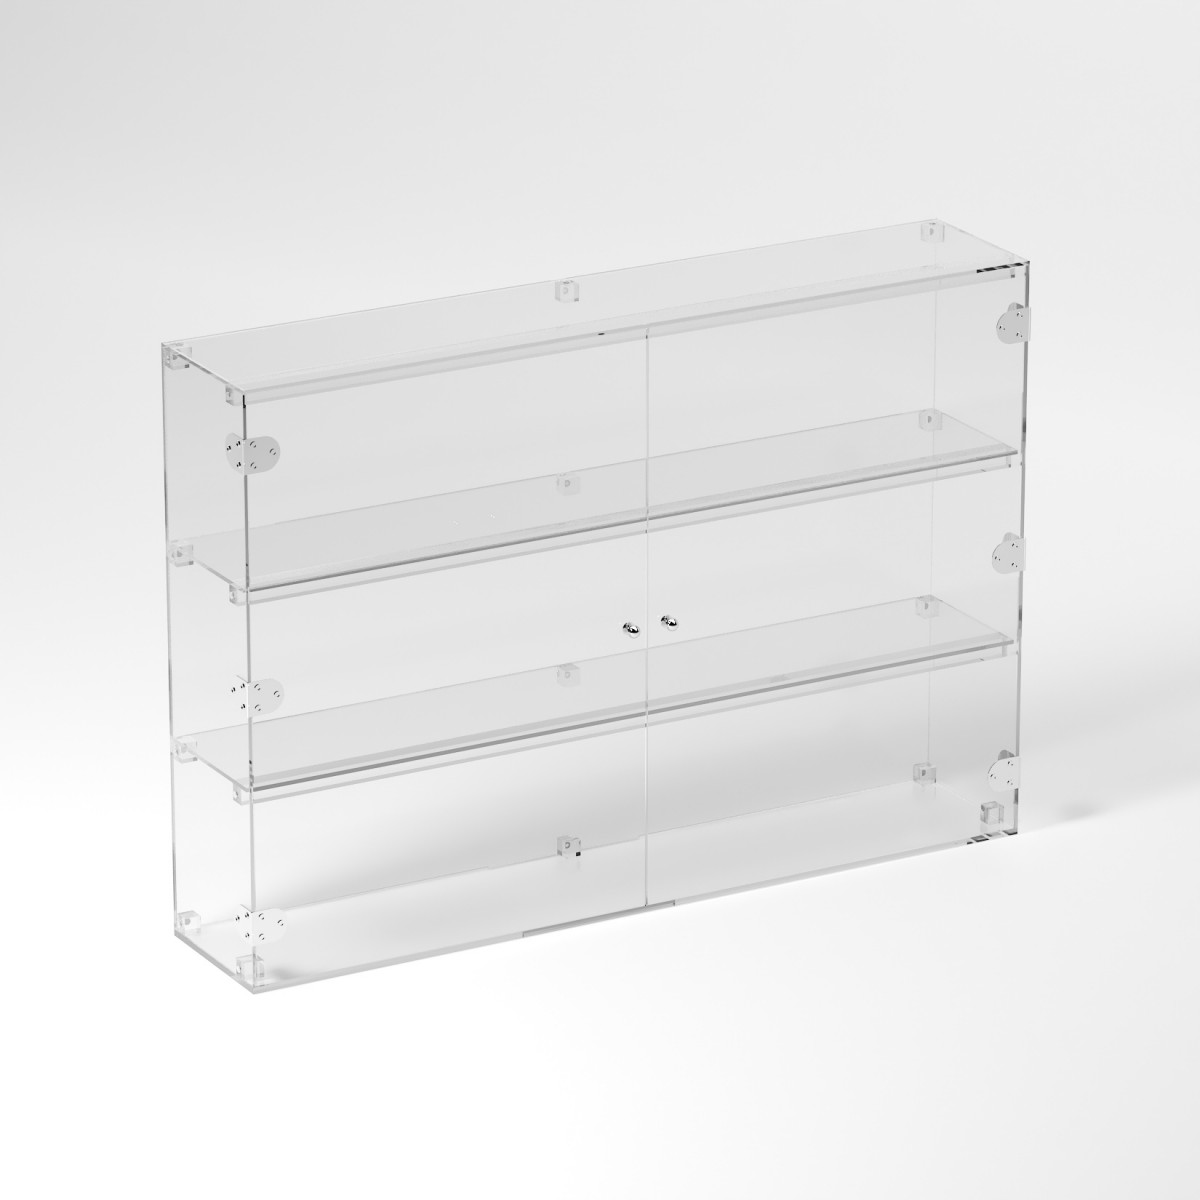 E-847 VET - Ampia vetrina espositiva in plexiglass trasparente a 3 ripiani - Misure: 100 x 20 x h70 cm